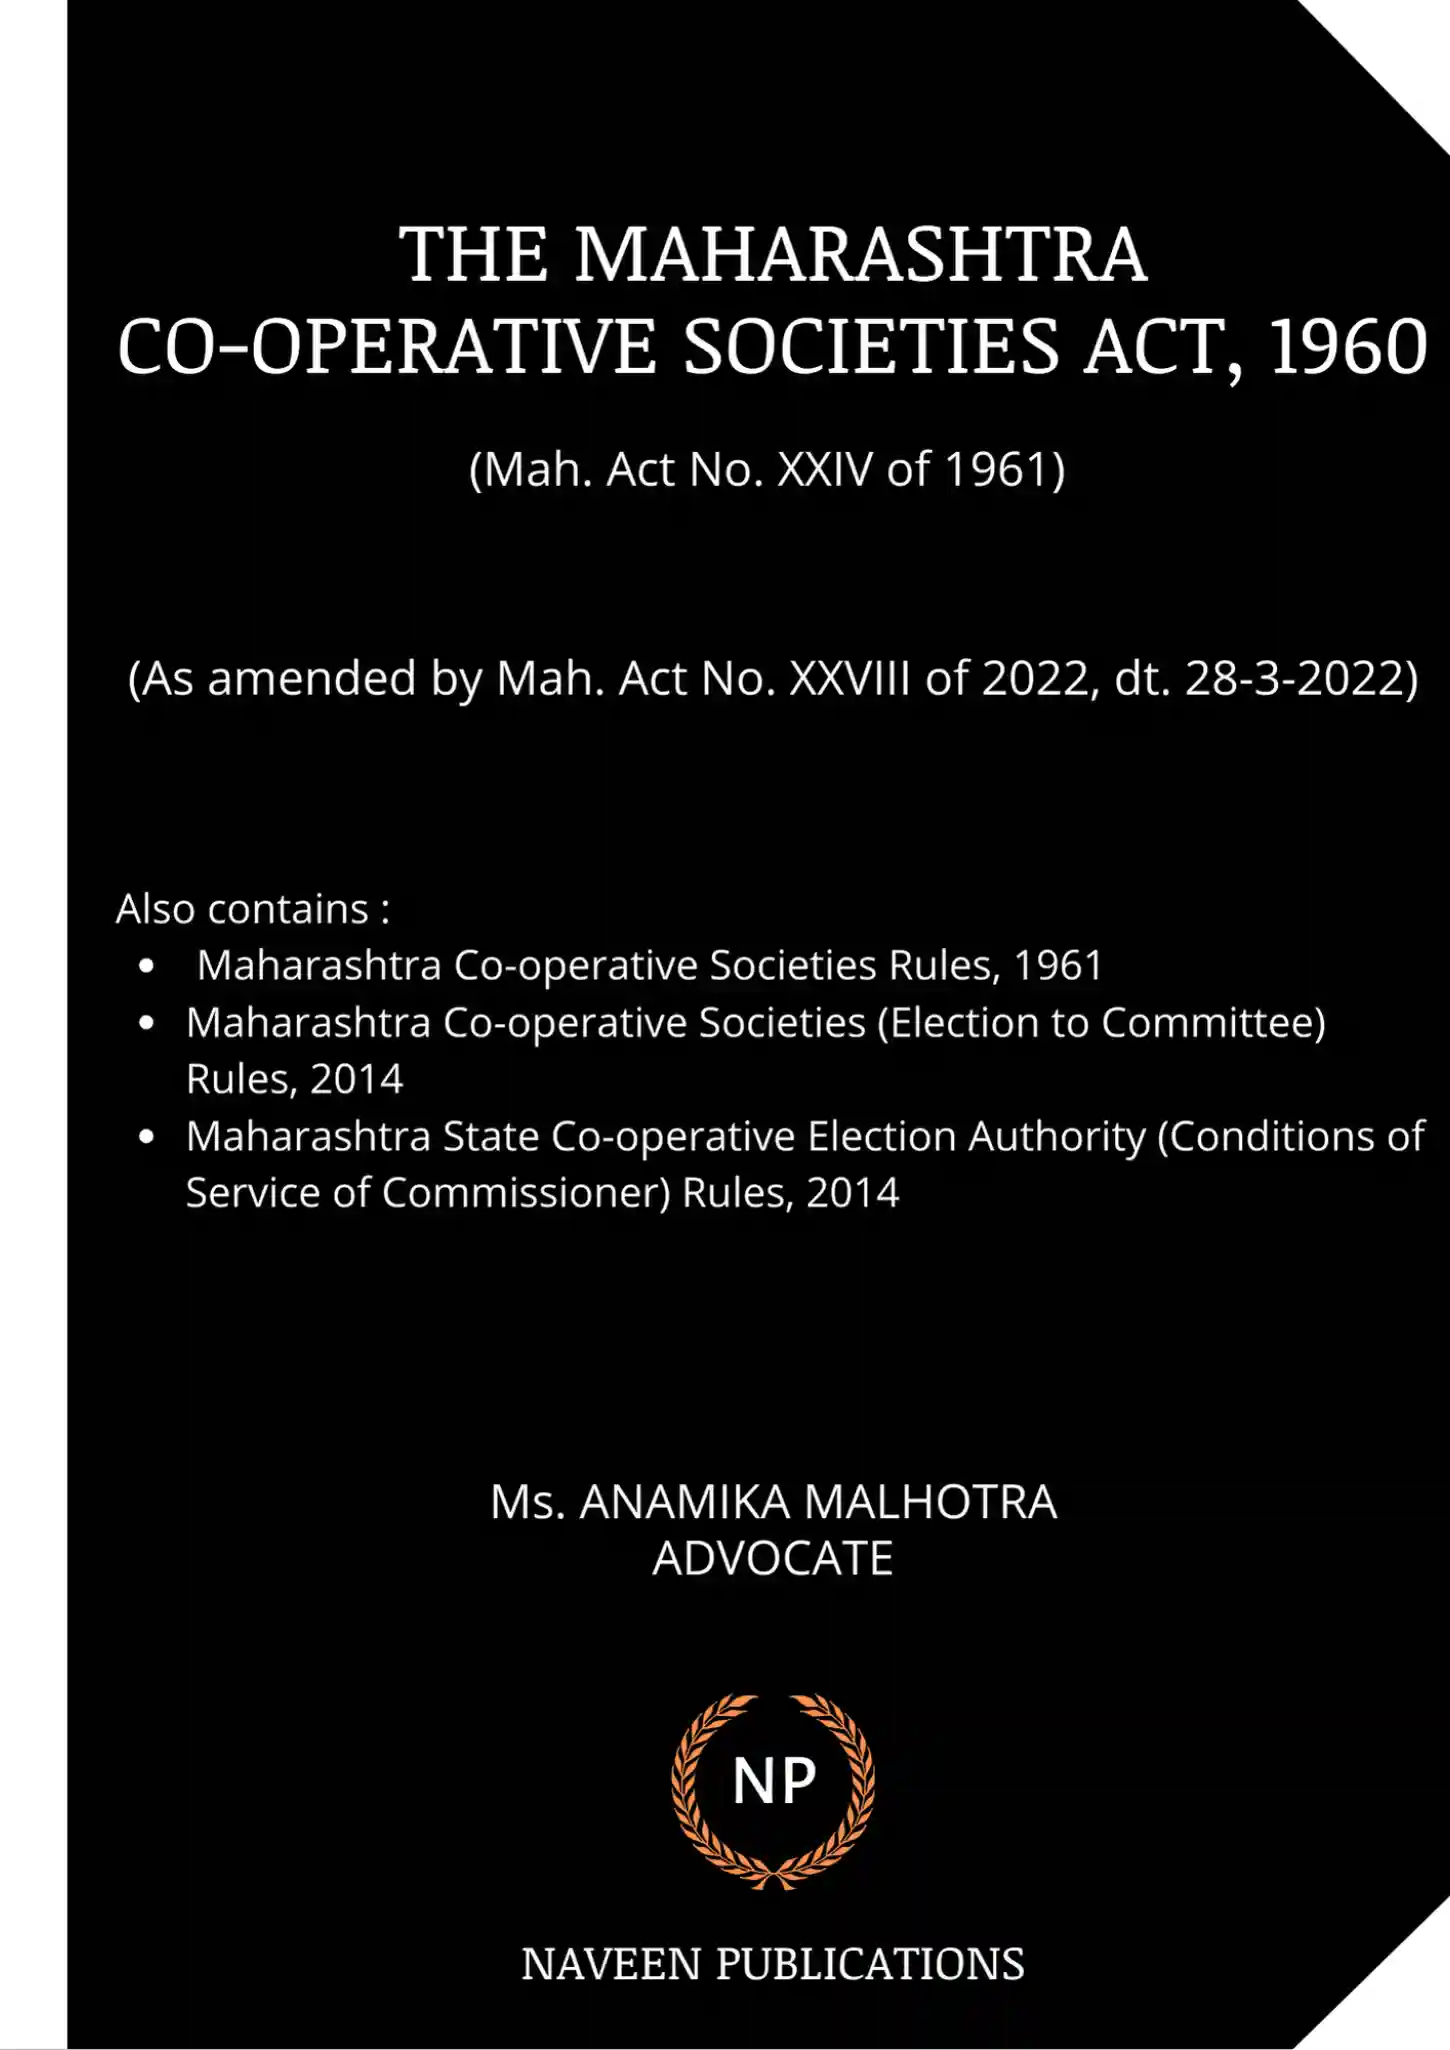 The Maharashtra Co-Operative Societies Act, 1960